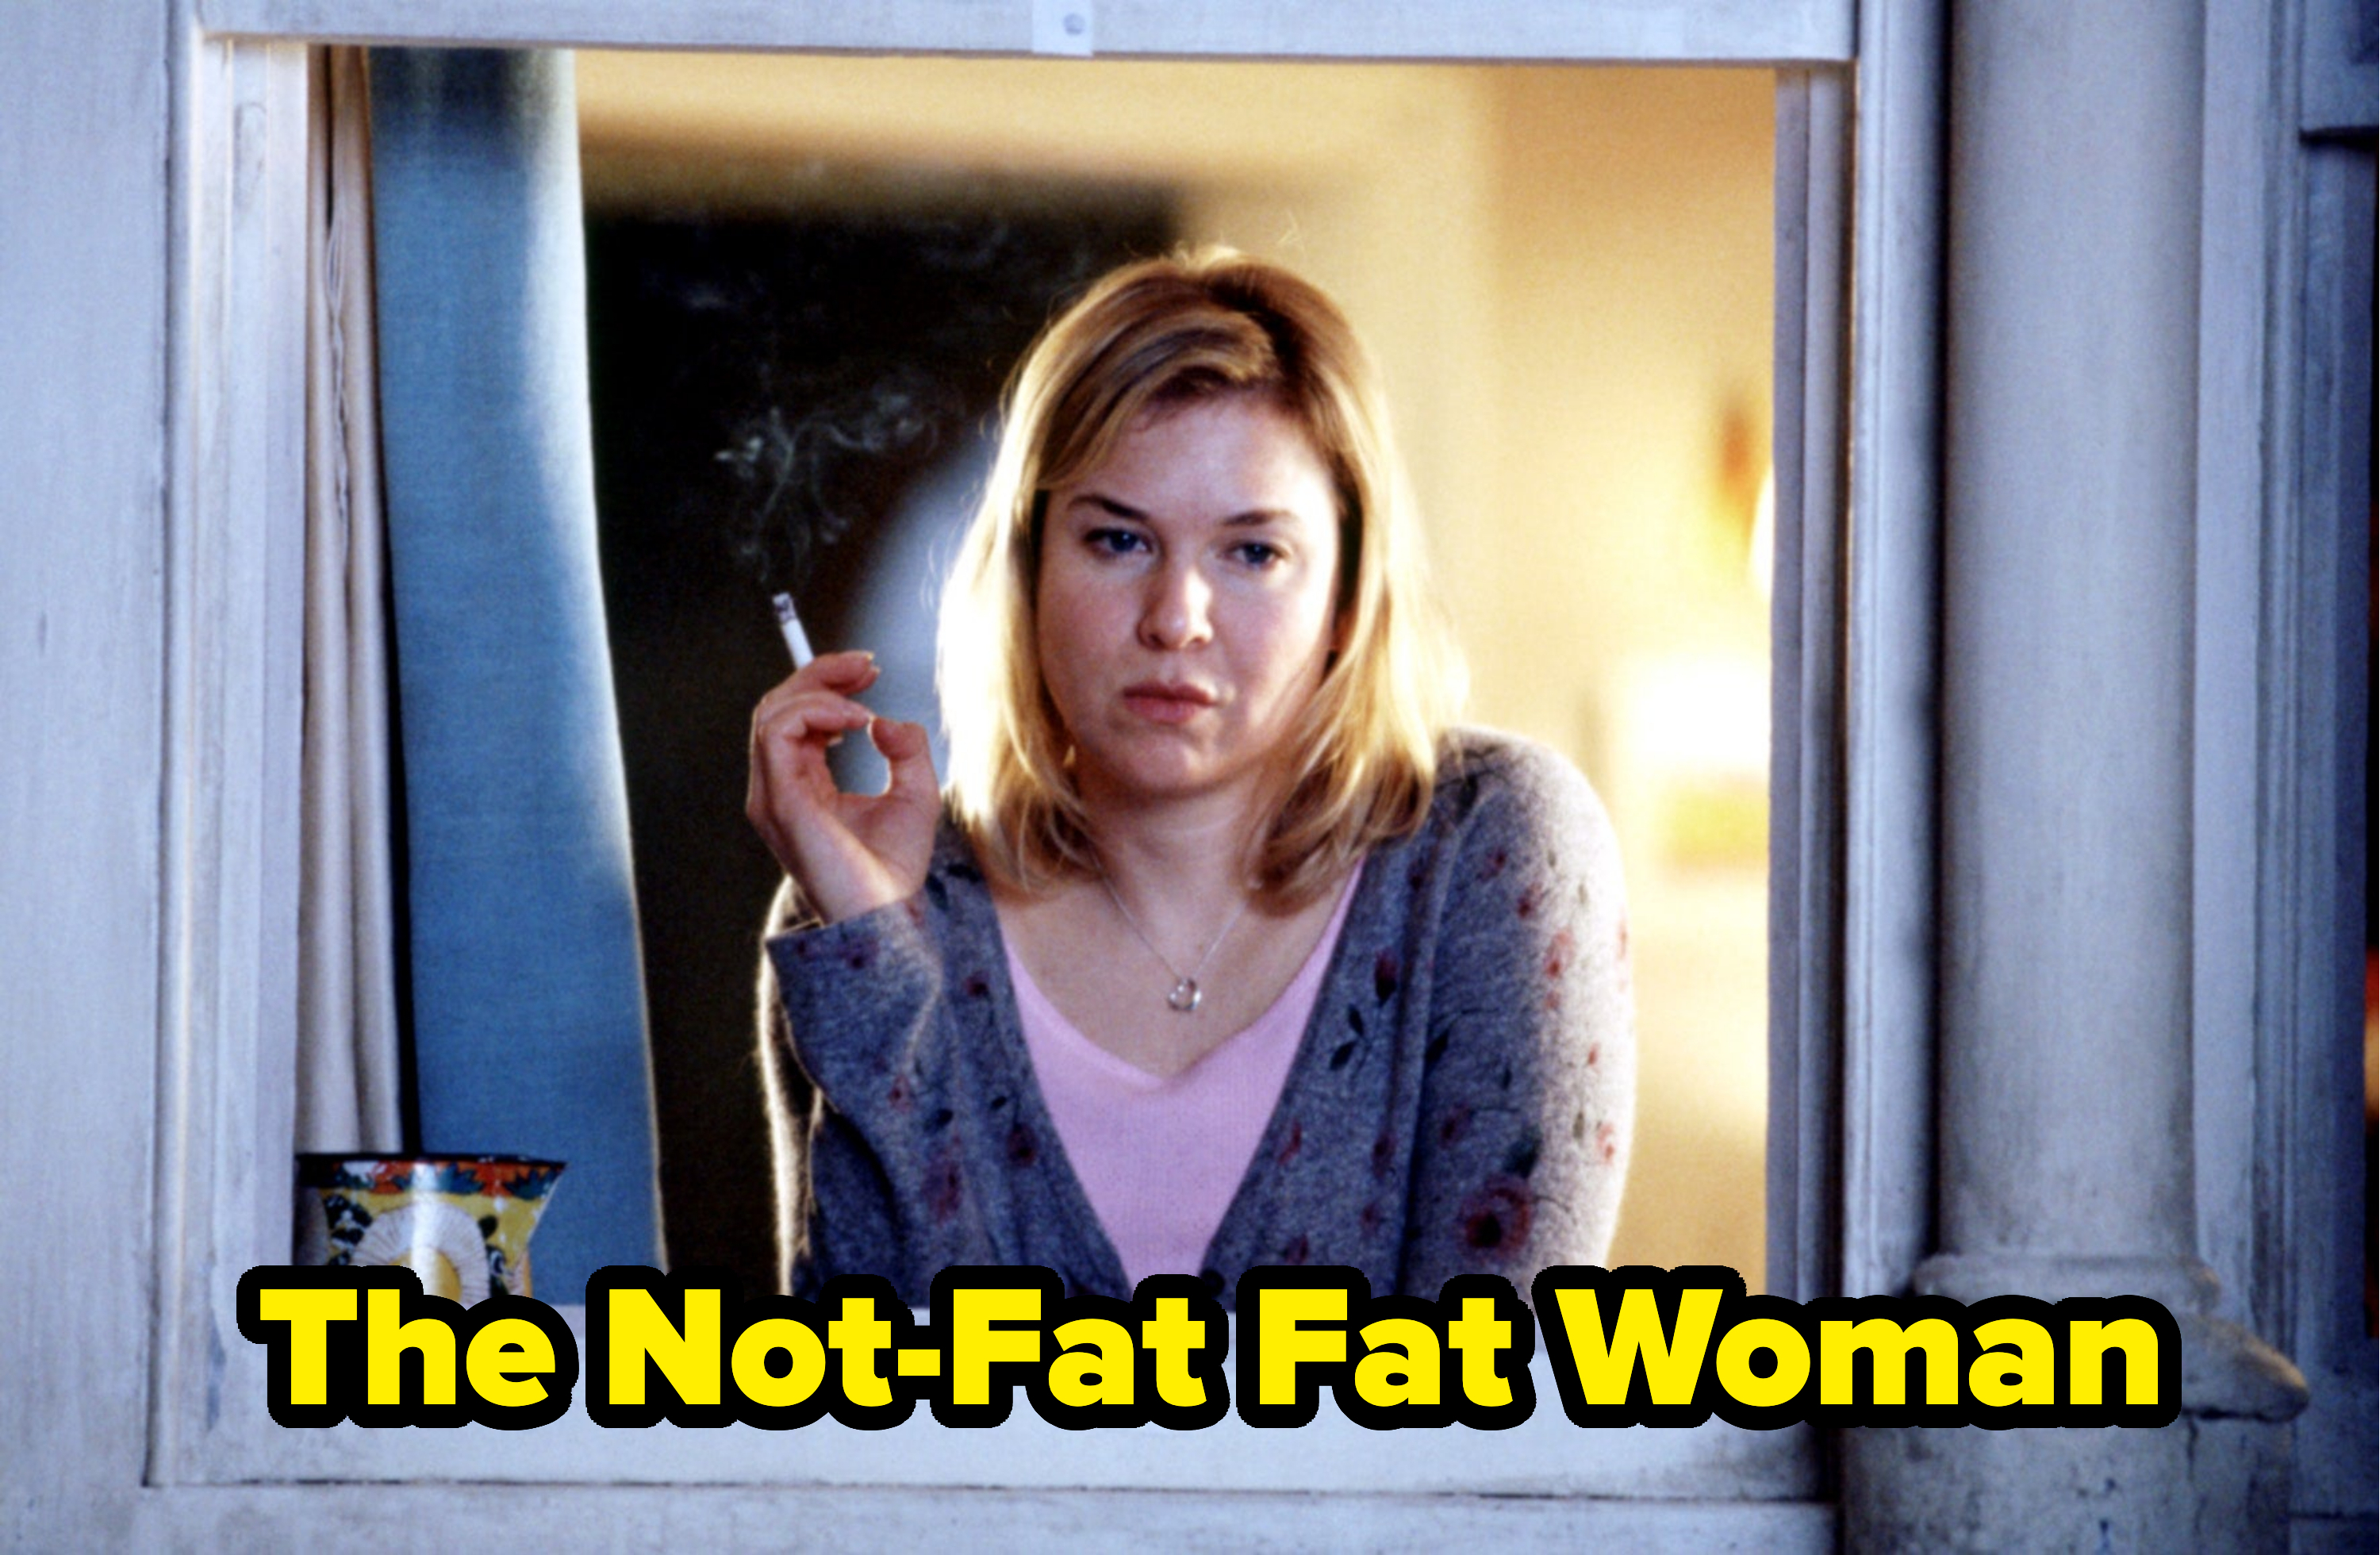 &quot;The Not-Fat Fat Woman&quot;